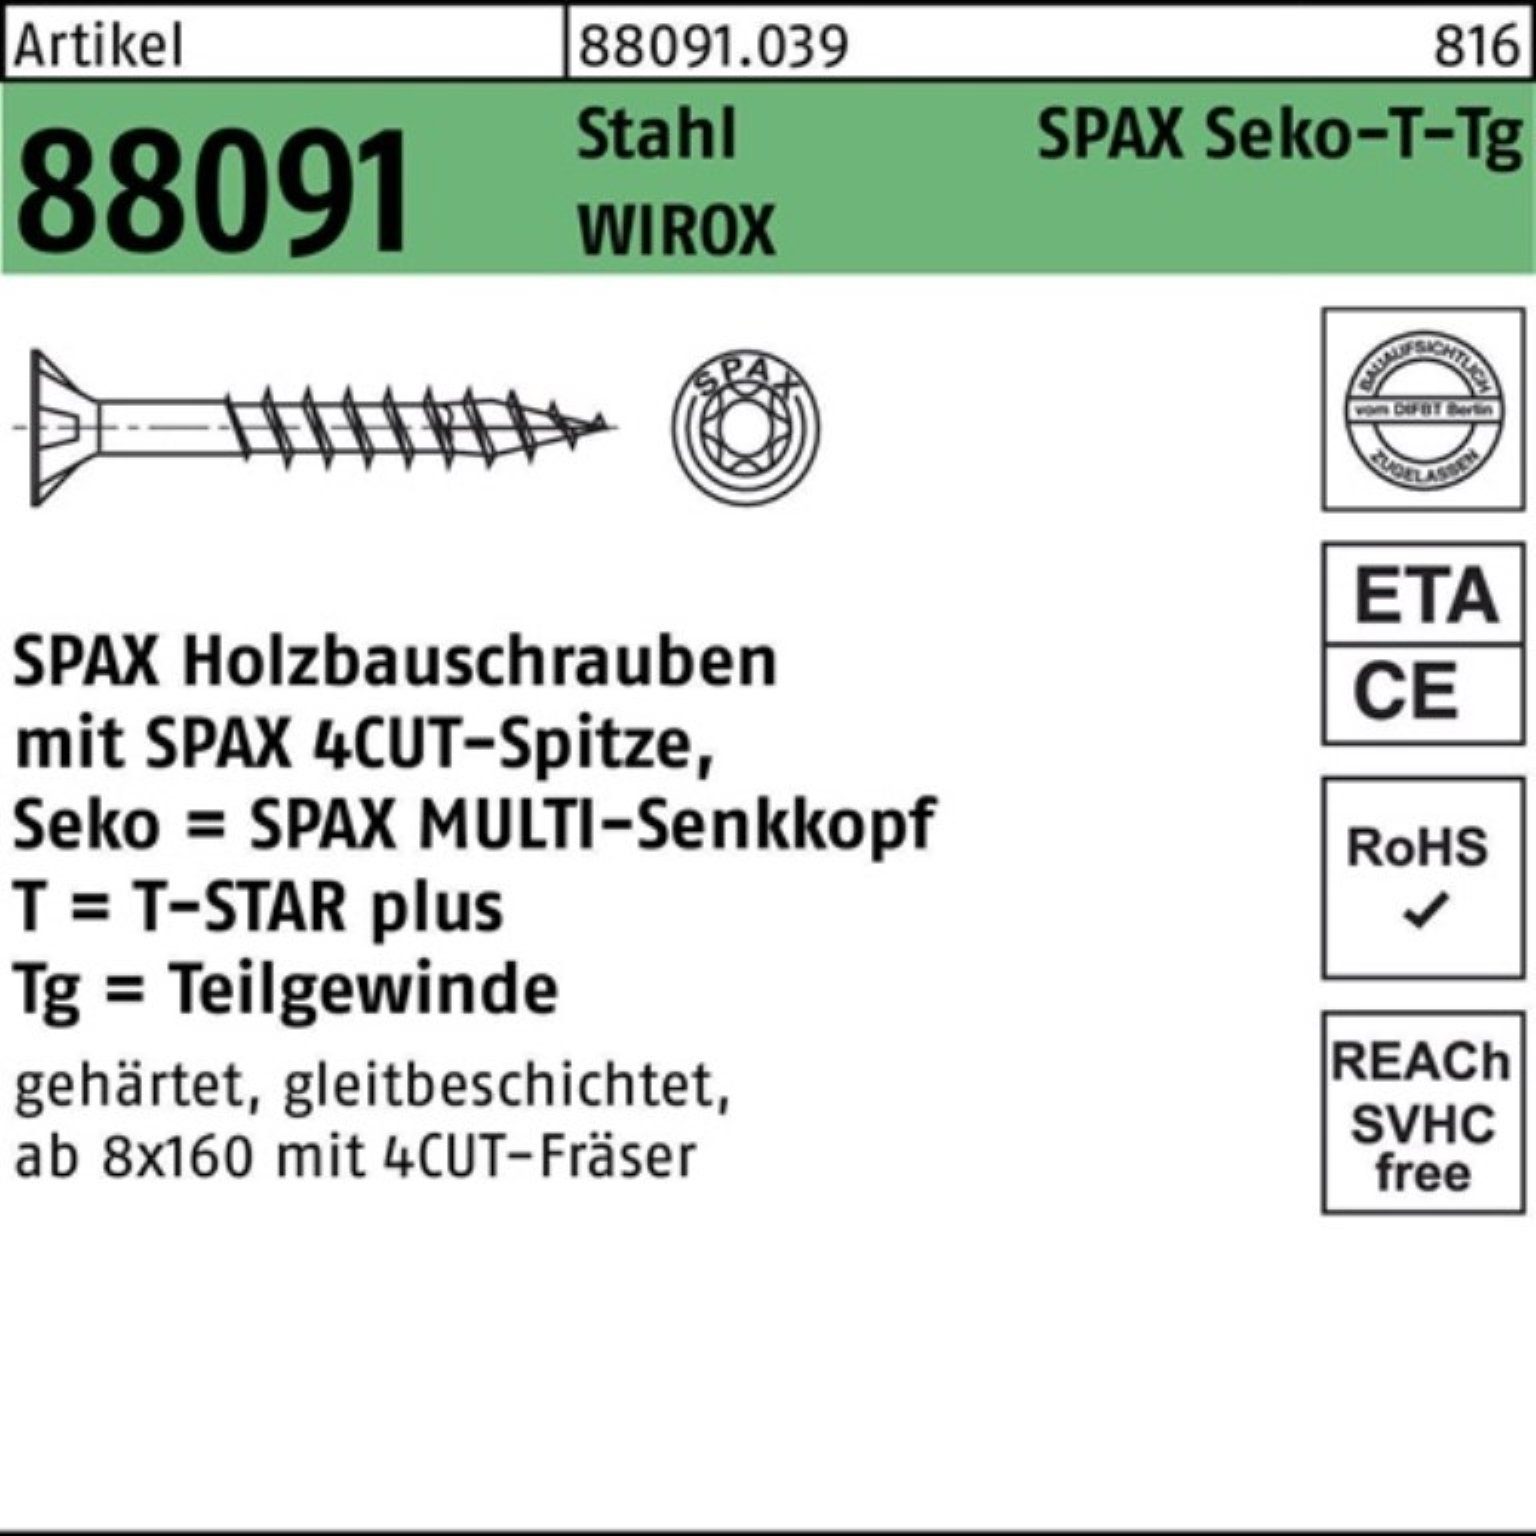 SPAX Schraube 100er Pack Schraube R 88091 SEKO/T-STAR TG 10x 400/80-T50 Stahl WIROX